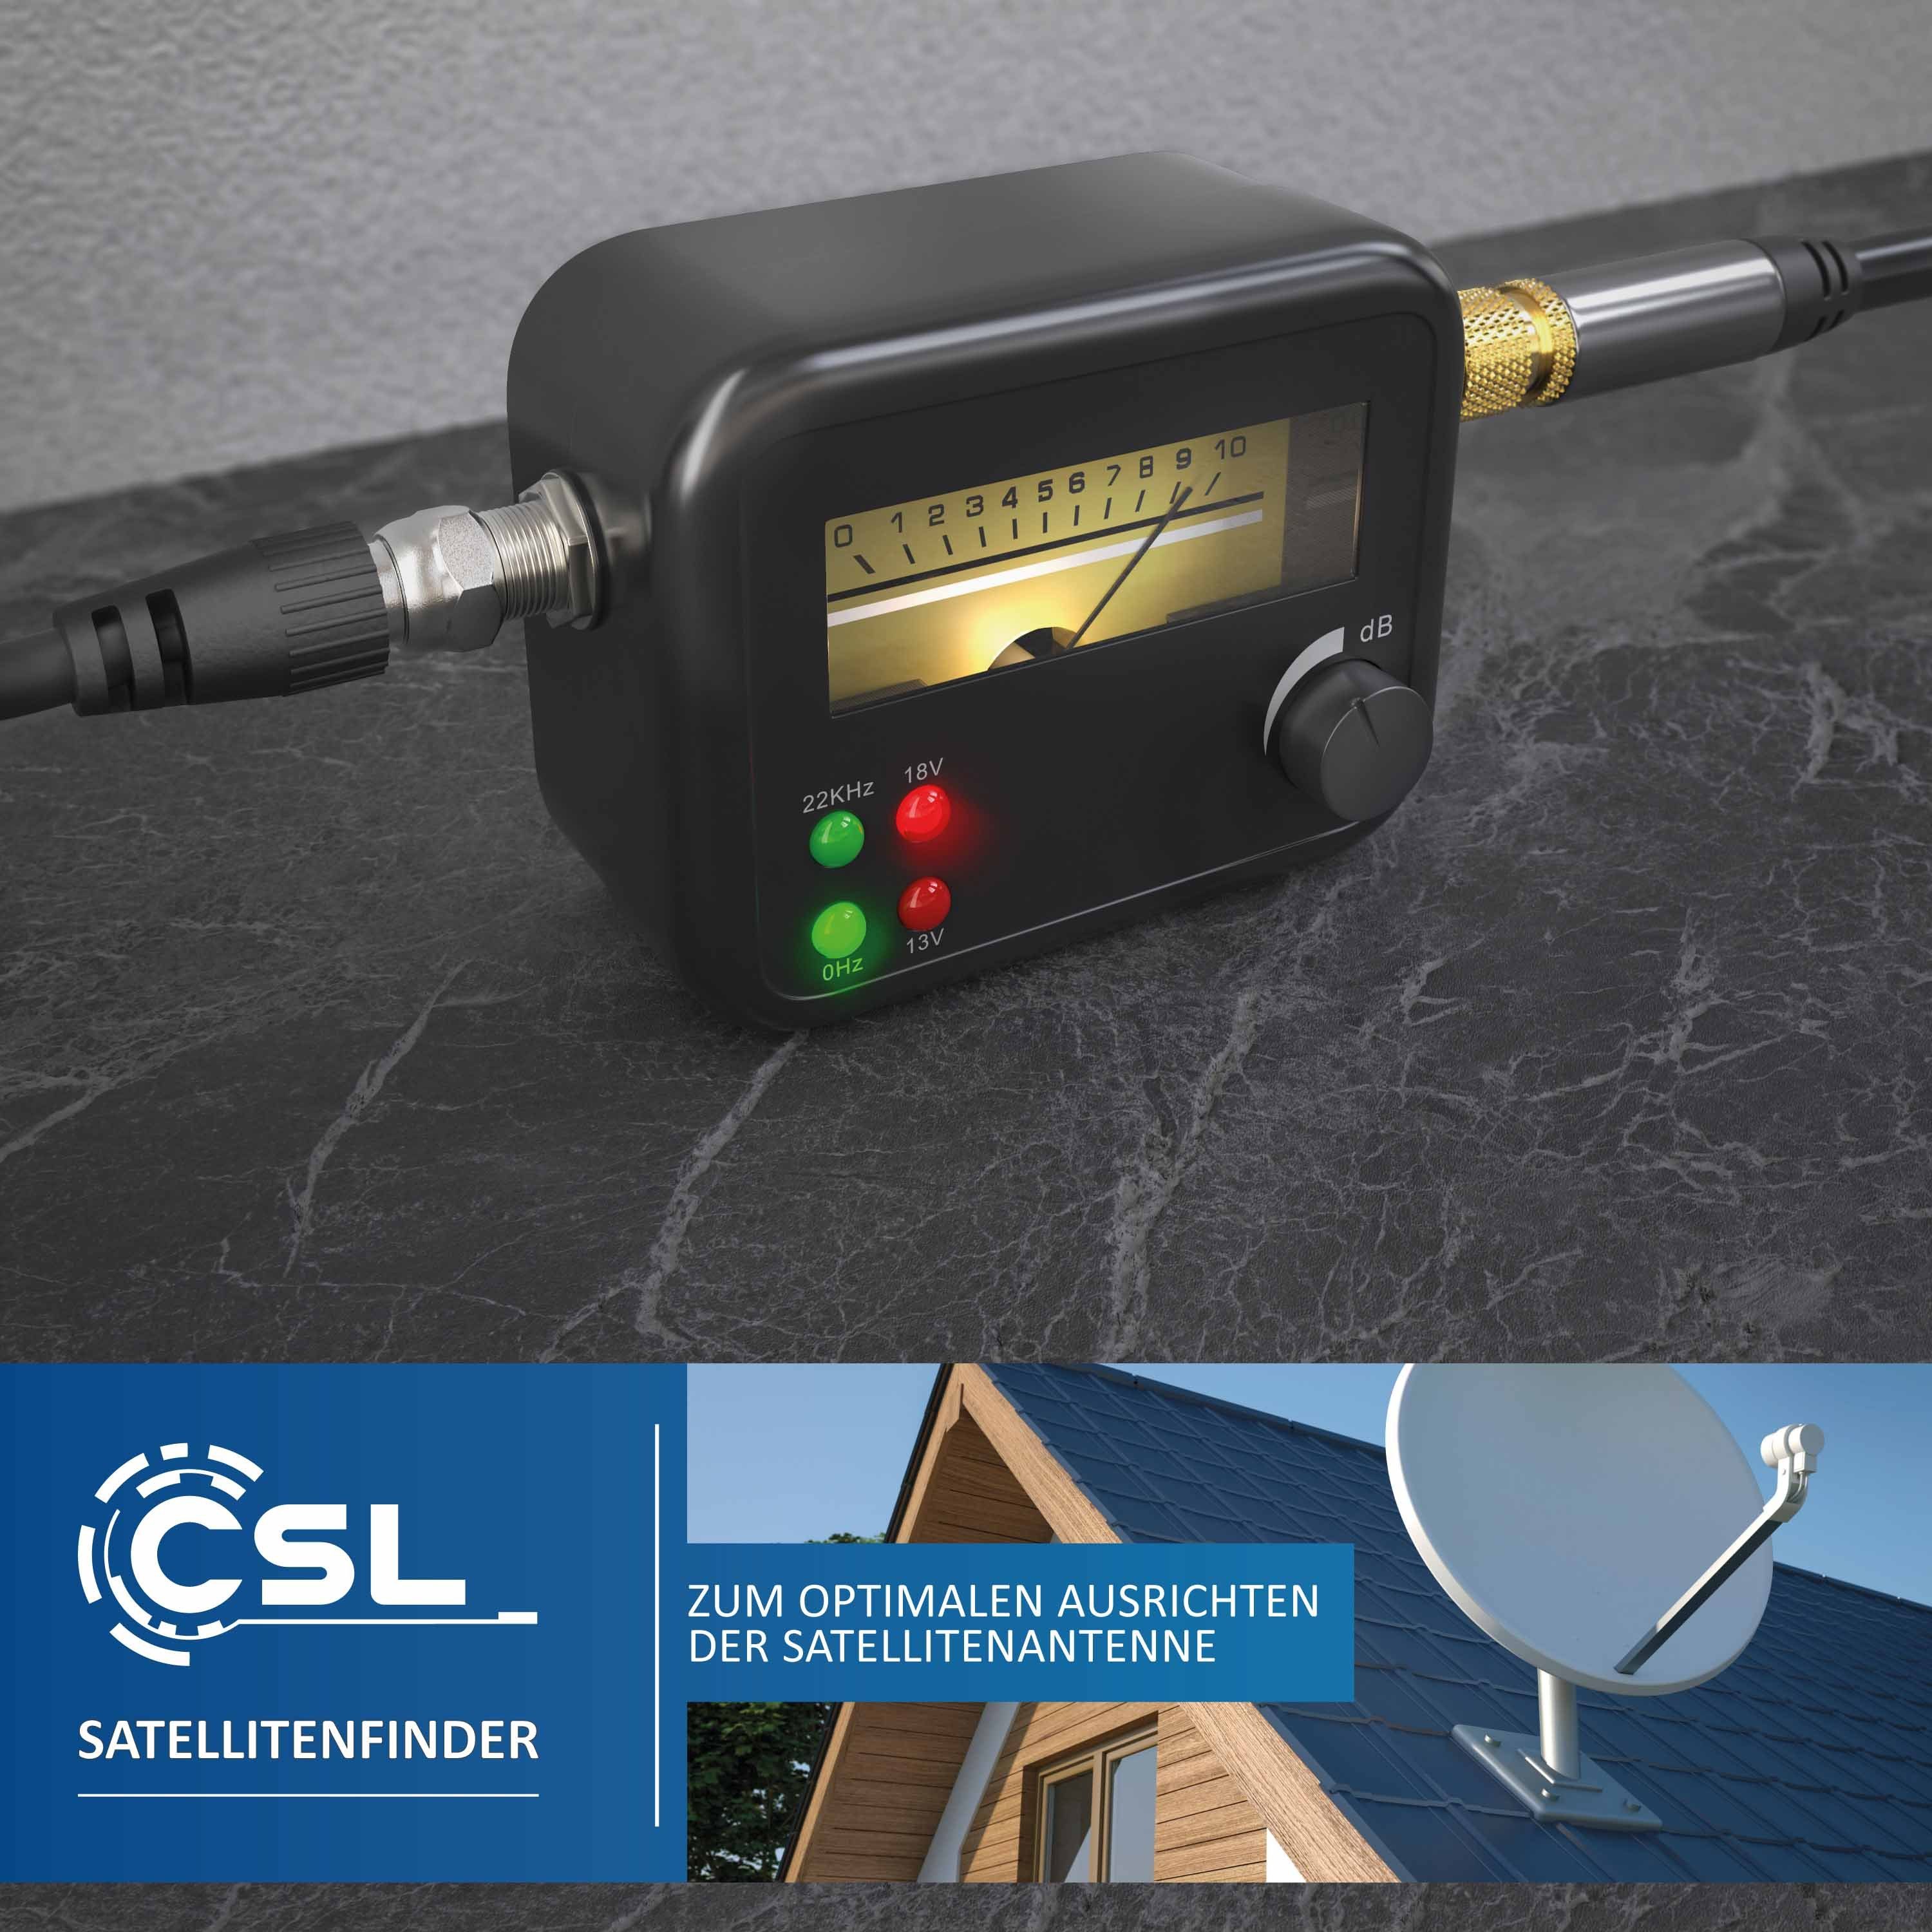 CSL Satfinder, Satellitenfinder mit HD-fähig, Pegelskala, Signalton Zeigeranzeige mit